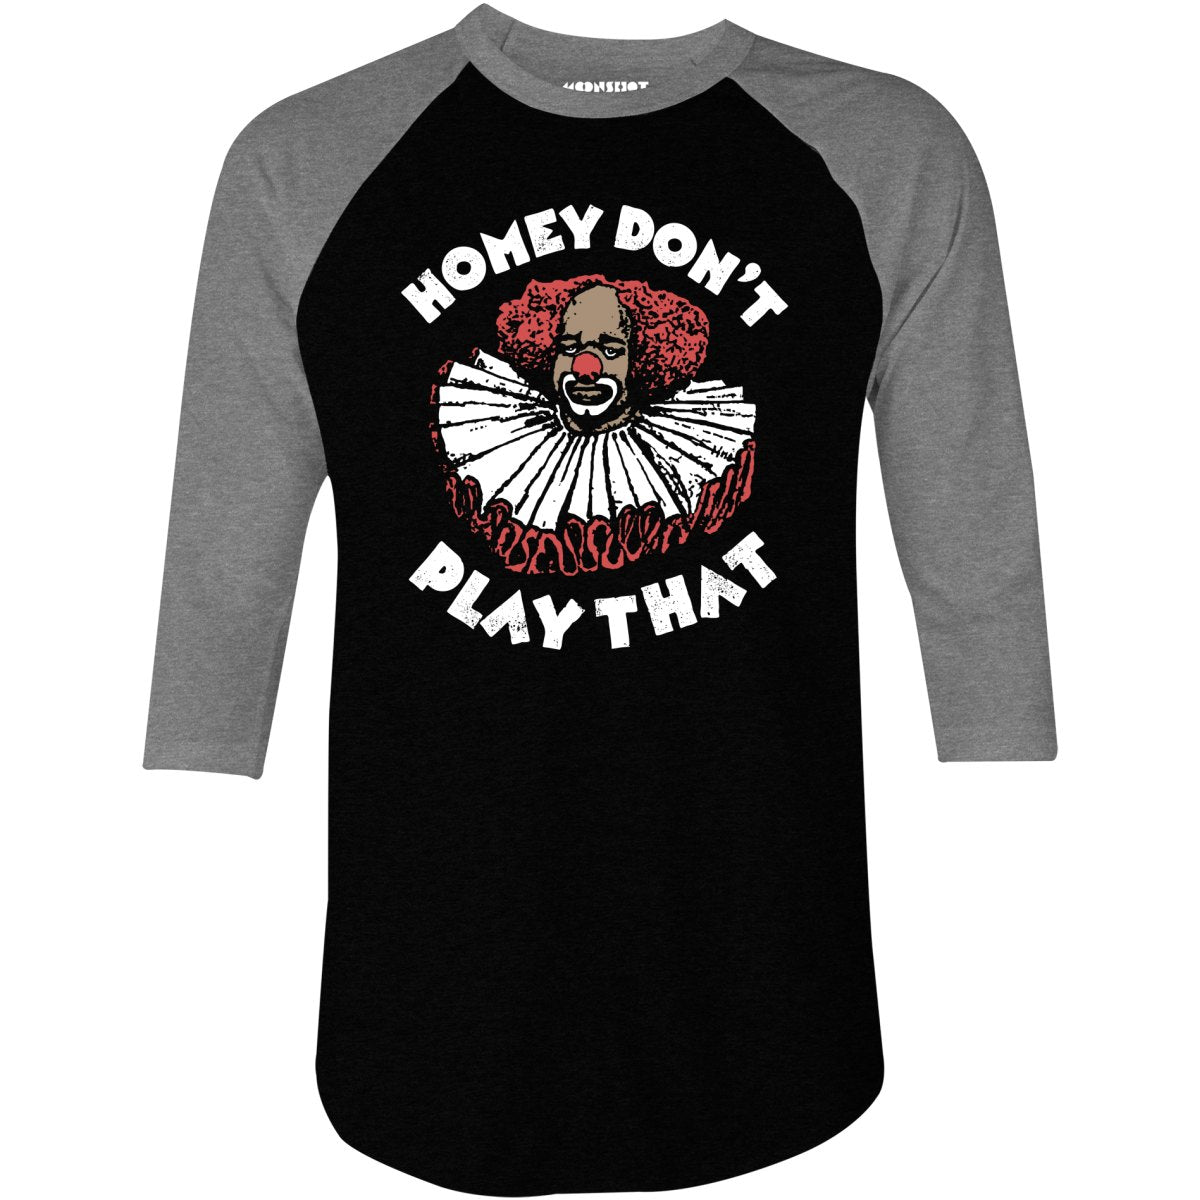 Homey Don't Play That - 3/4 Sleeve Raglan T-Shirt